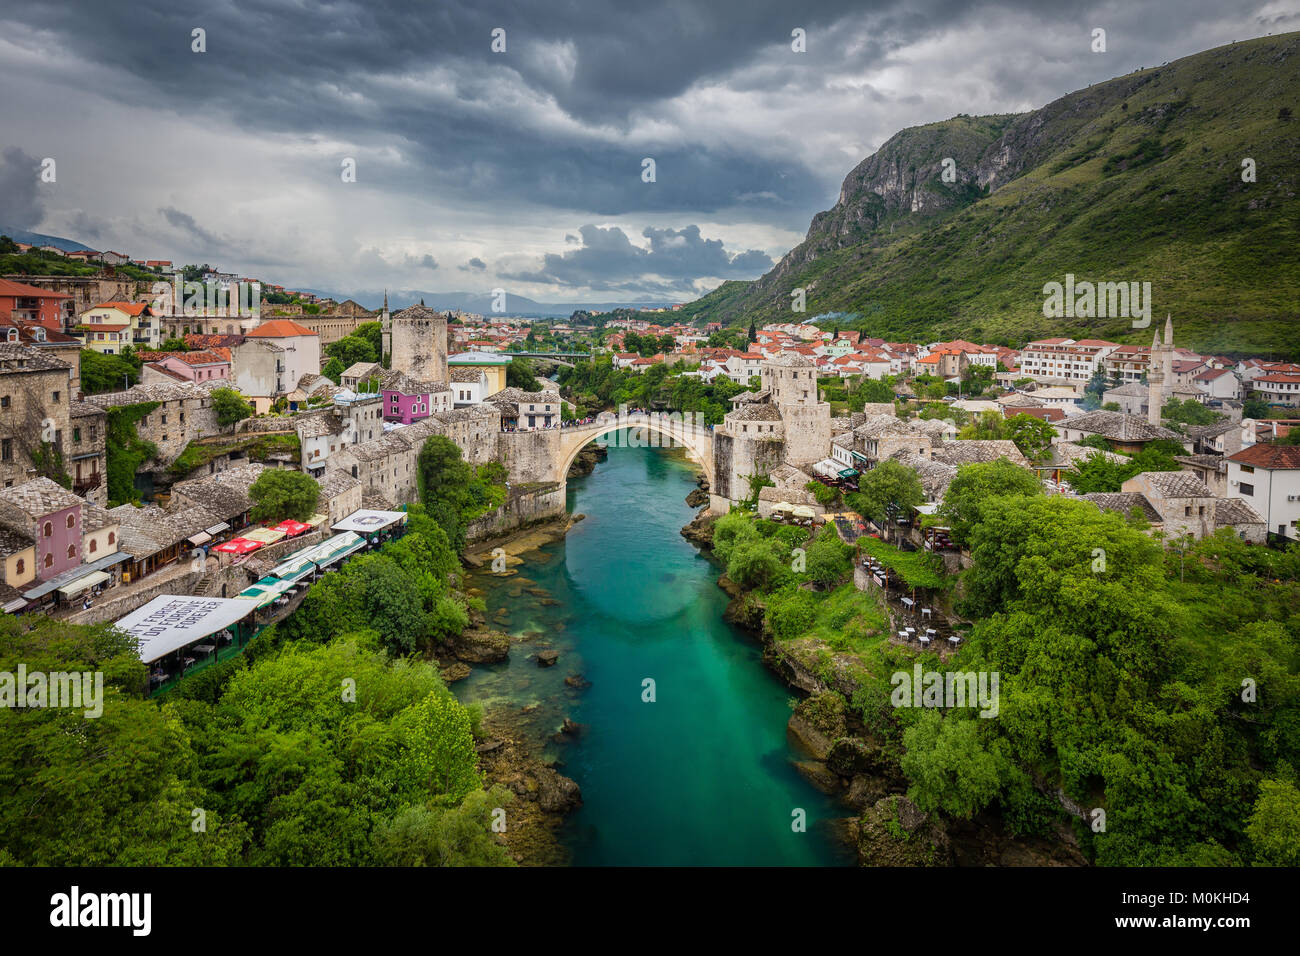 Vista aerea della città storica di Mostar con il famoso Ponte Vecchio (Stari Most) in una piovosa giornata con nuvole scure in estate, in Bosnia ed Erzegovina Foto Stock